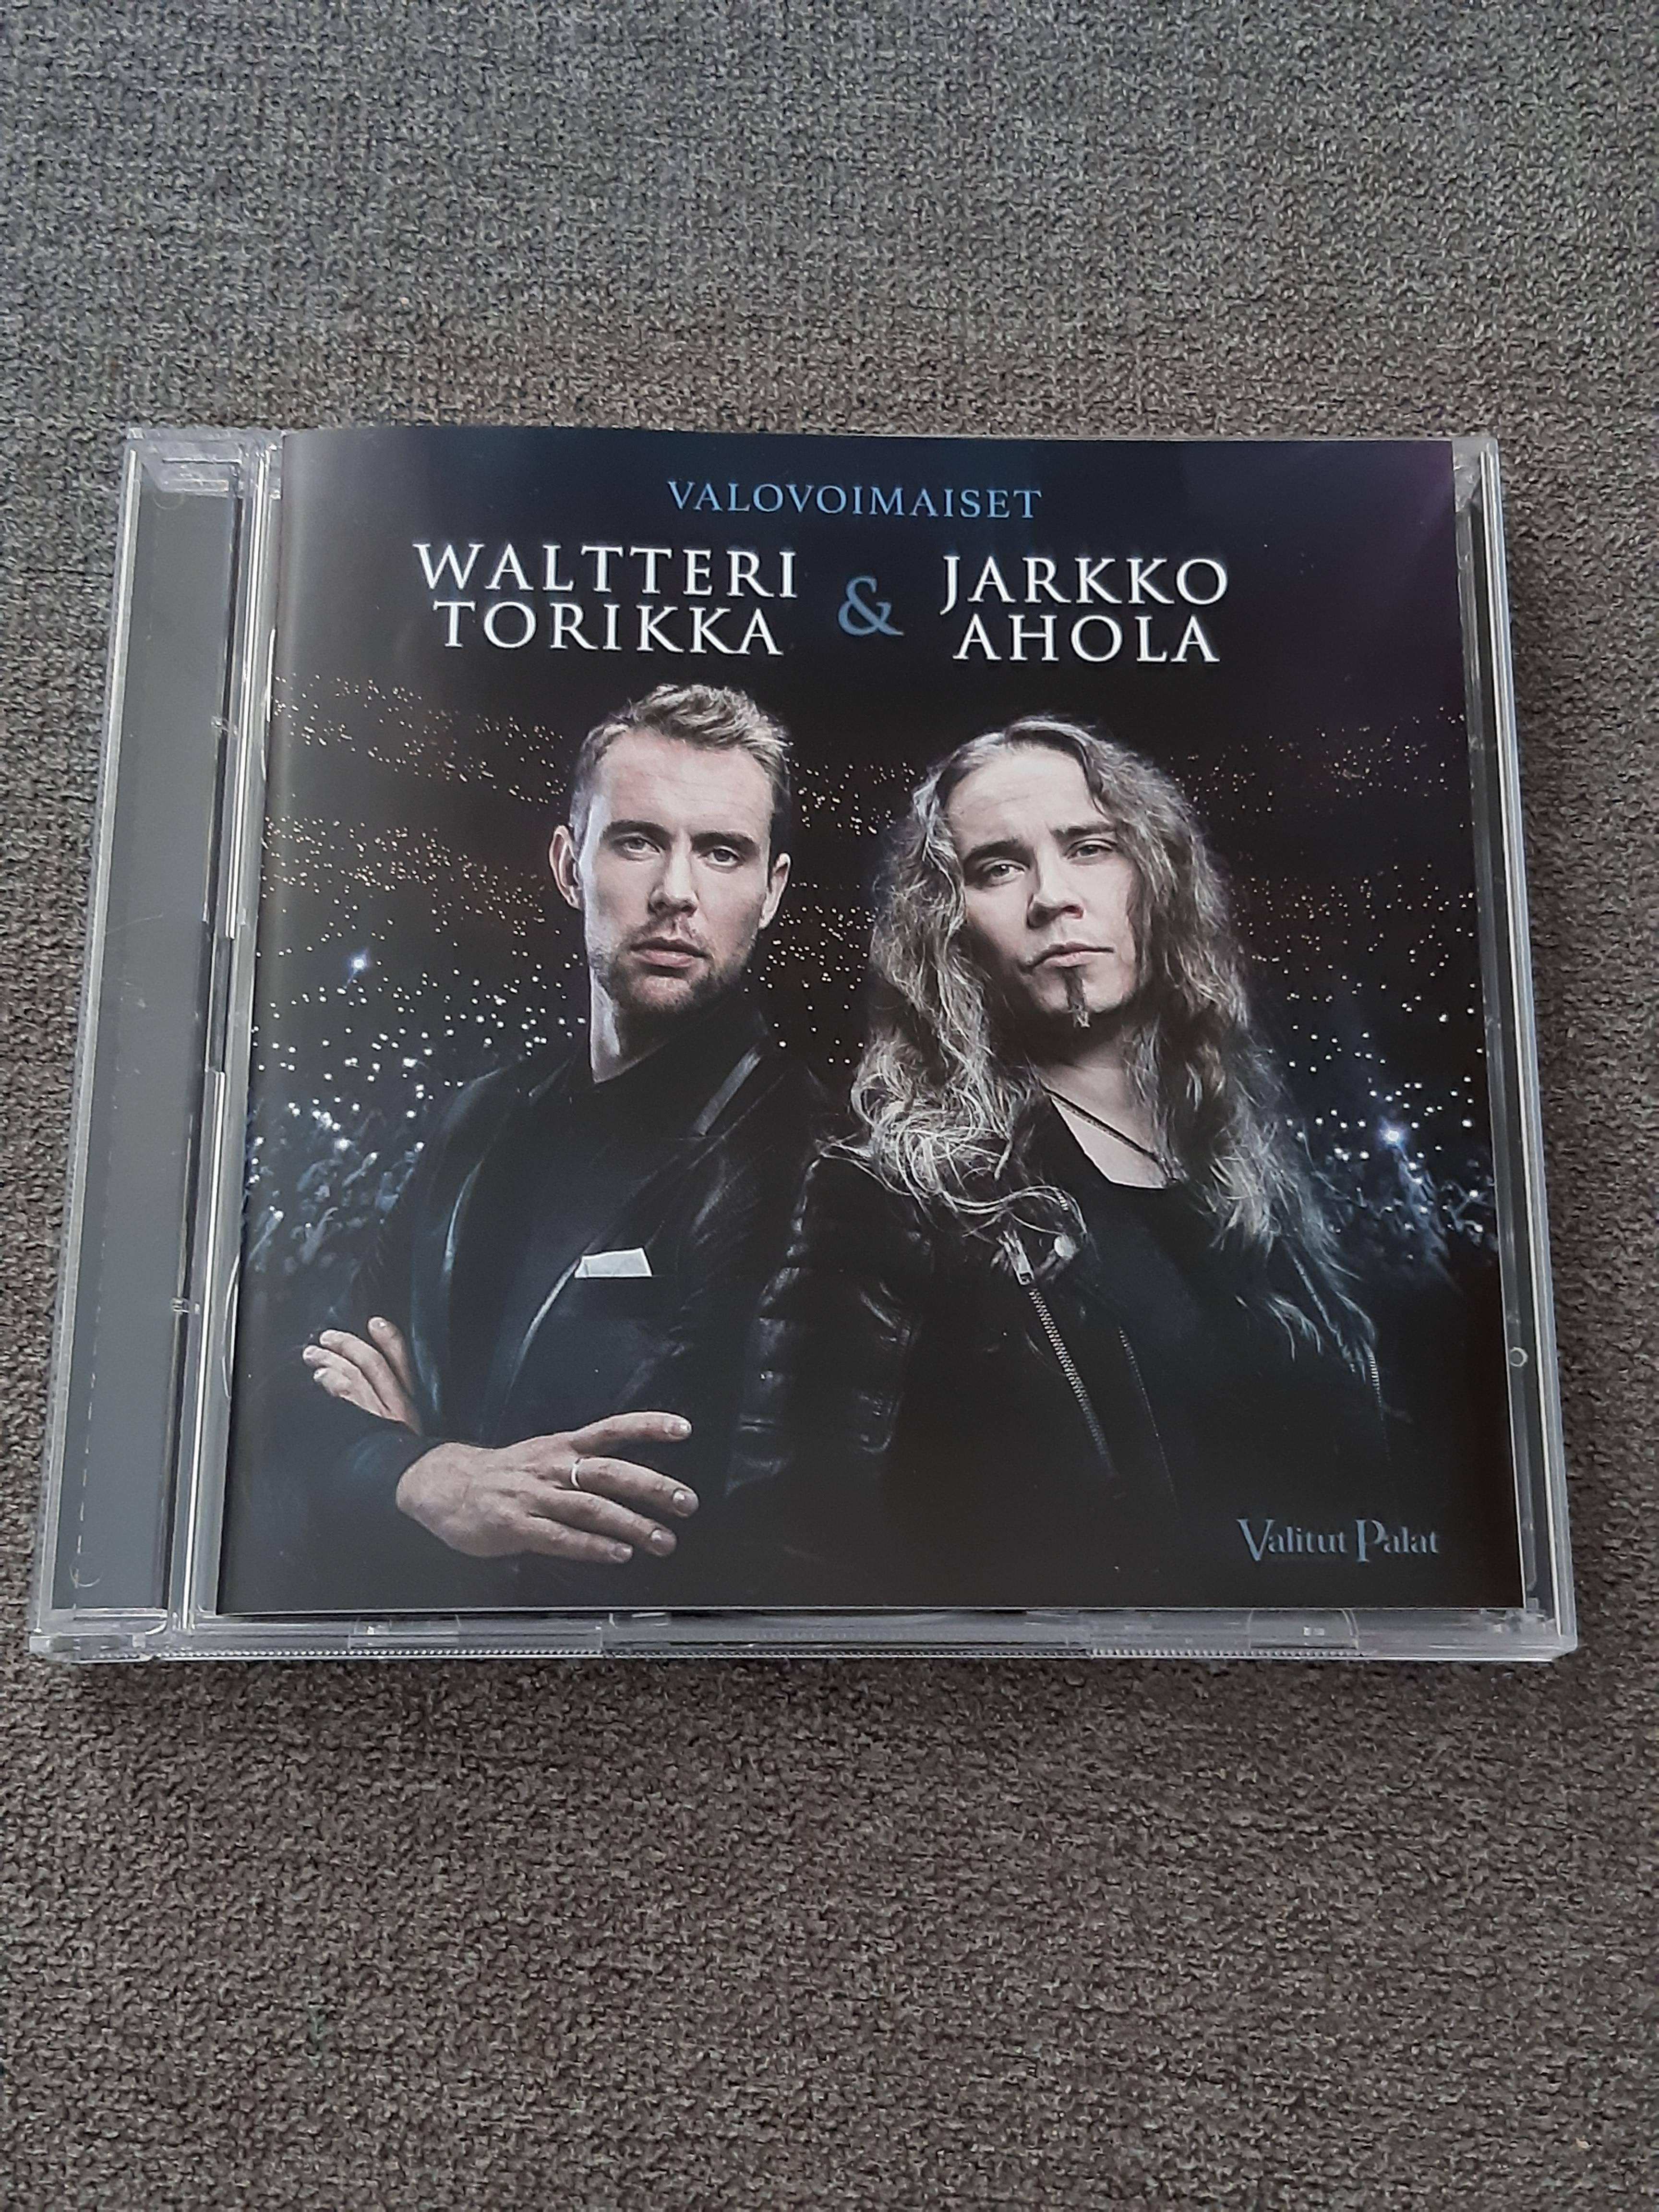 Waltteri Torikka & Jarkko Ahola - Valovoimaiset - 2 CD (käytetty)